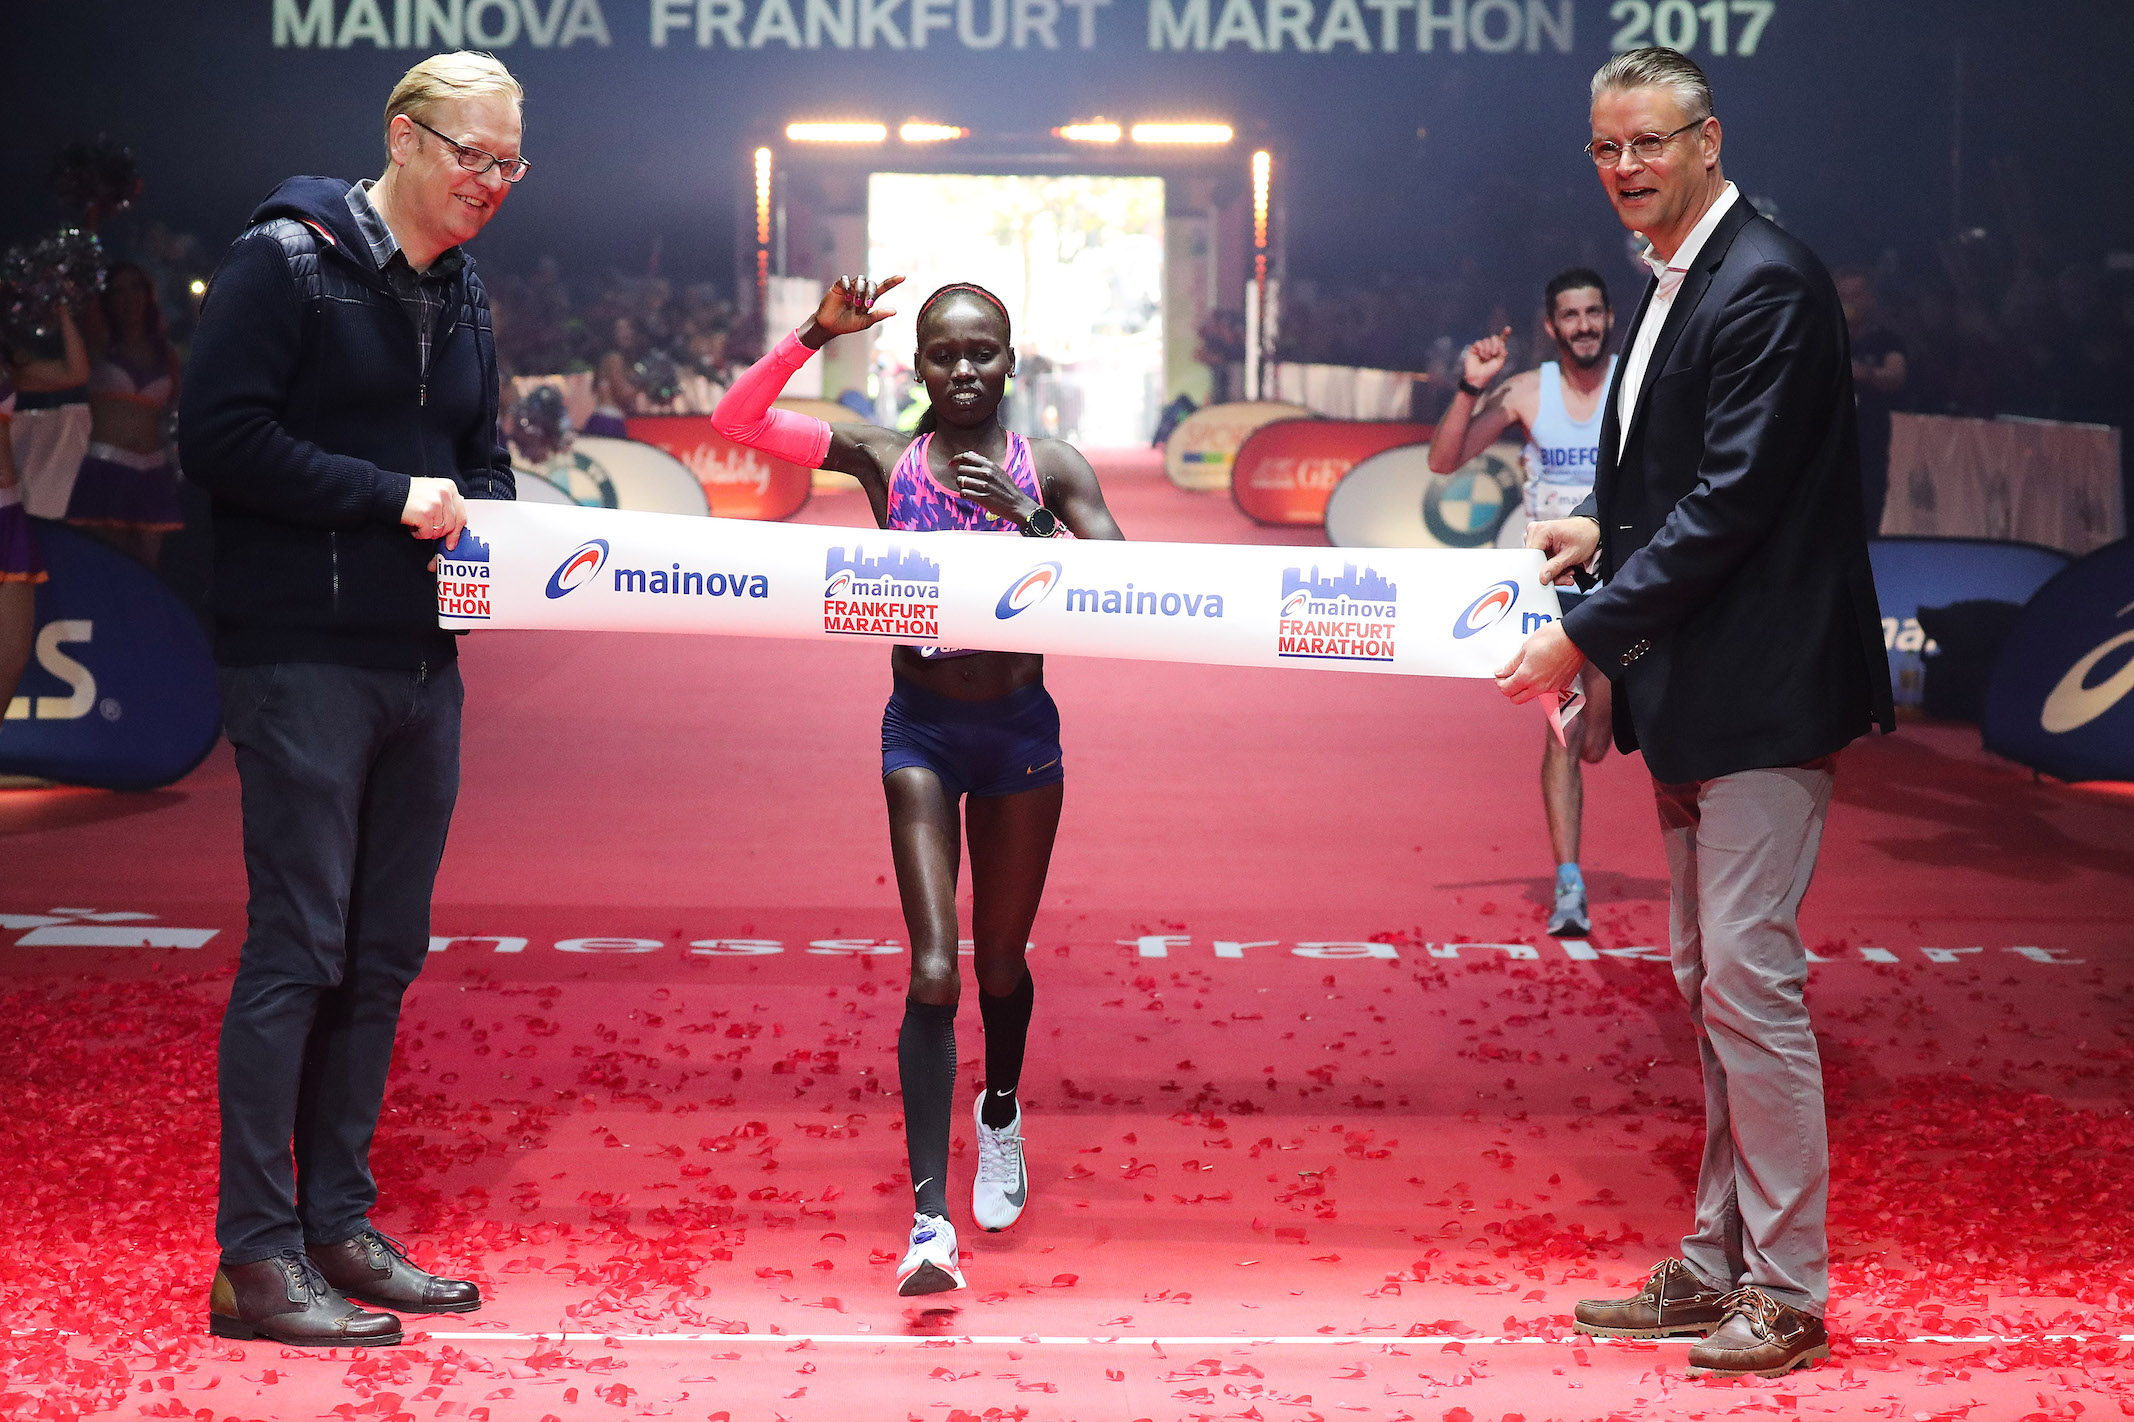 Mainova Frankfurt Marathon. Powiało światowymi wynikami